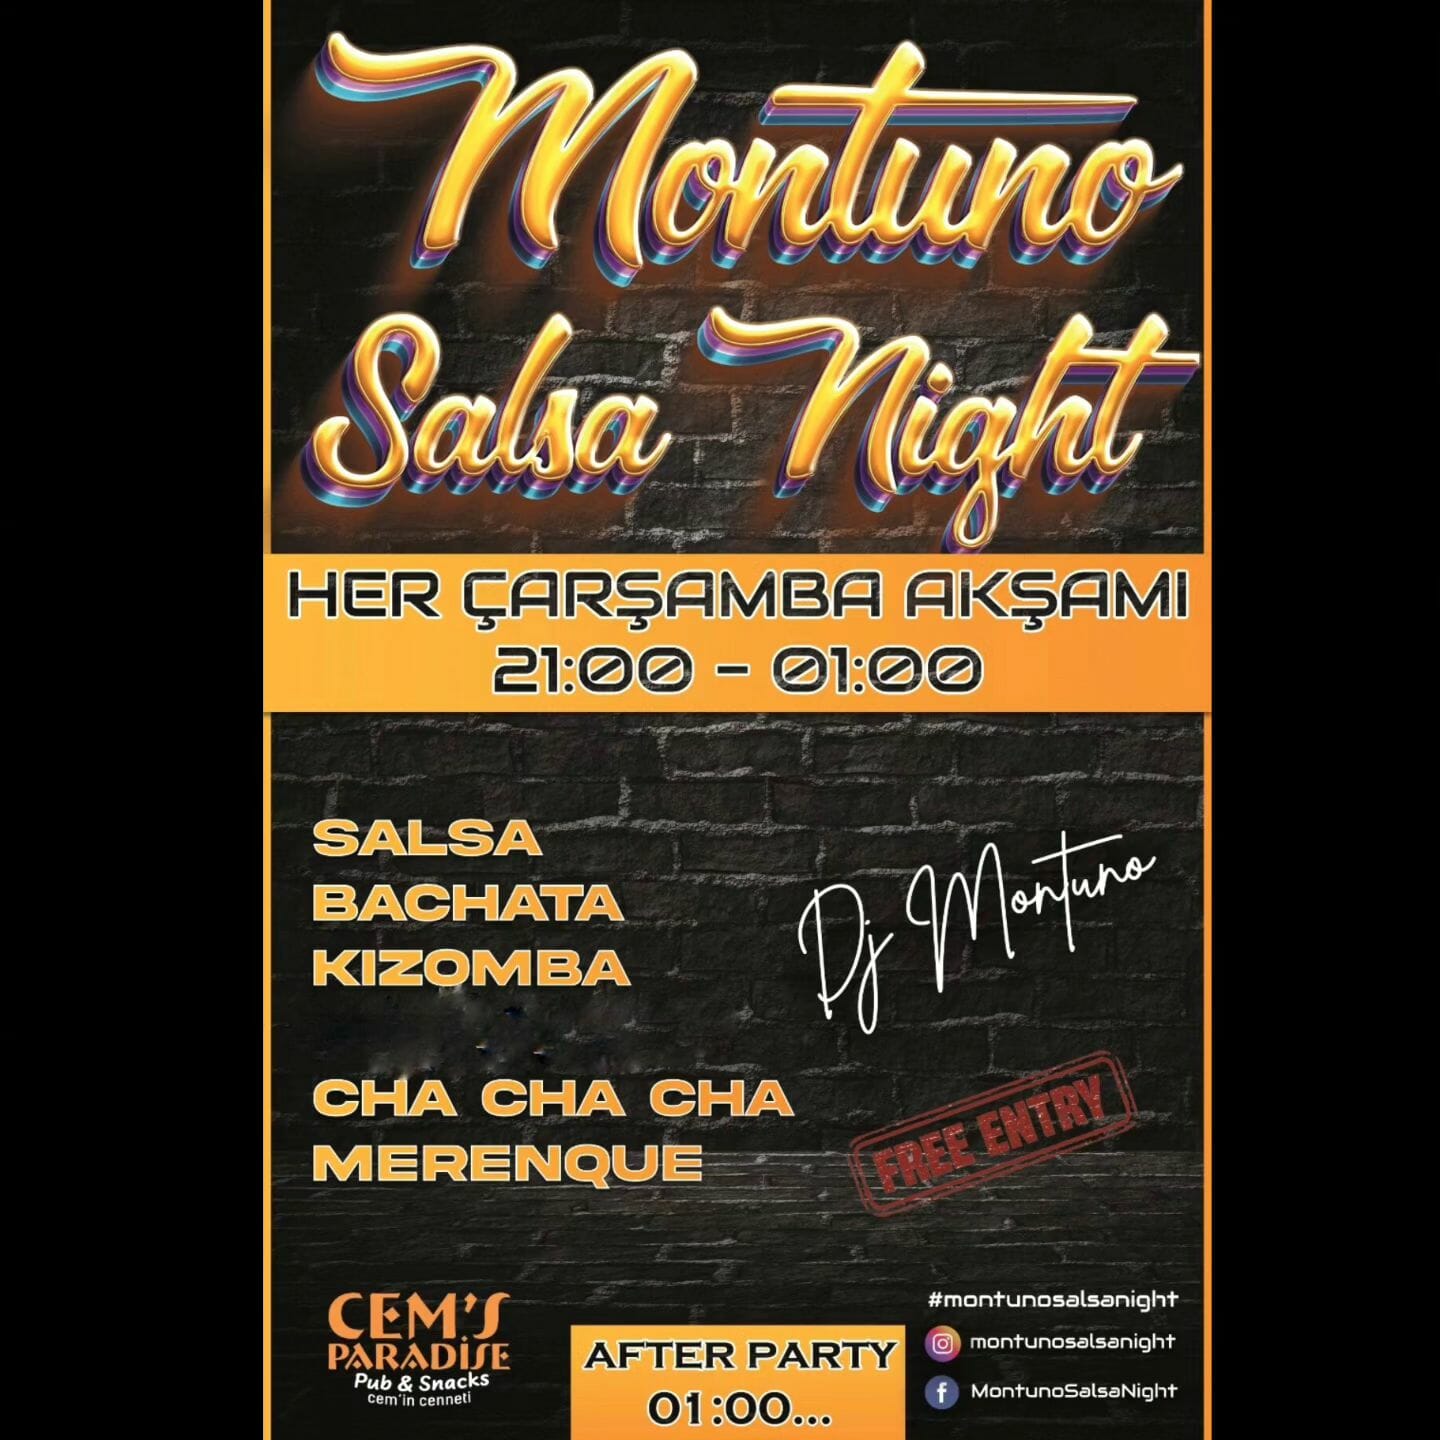 Dans Partnerim - Dans gecesi ve canlandırıcı salsa ve bachata dansı içeren canlı ve enerjik bir dans partisi için Montuno salsa gecesi broşürü.